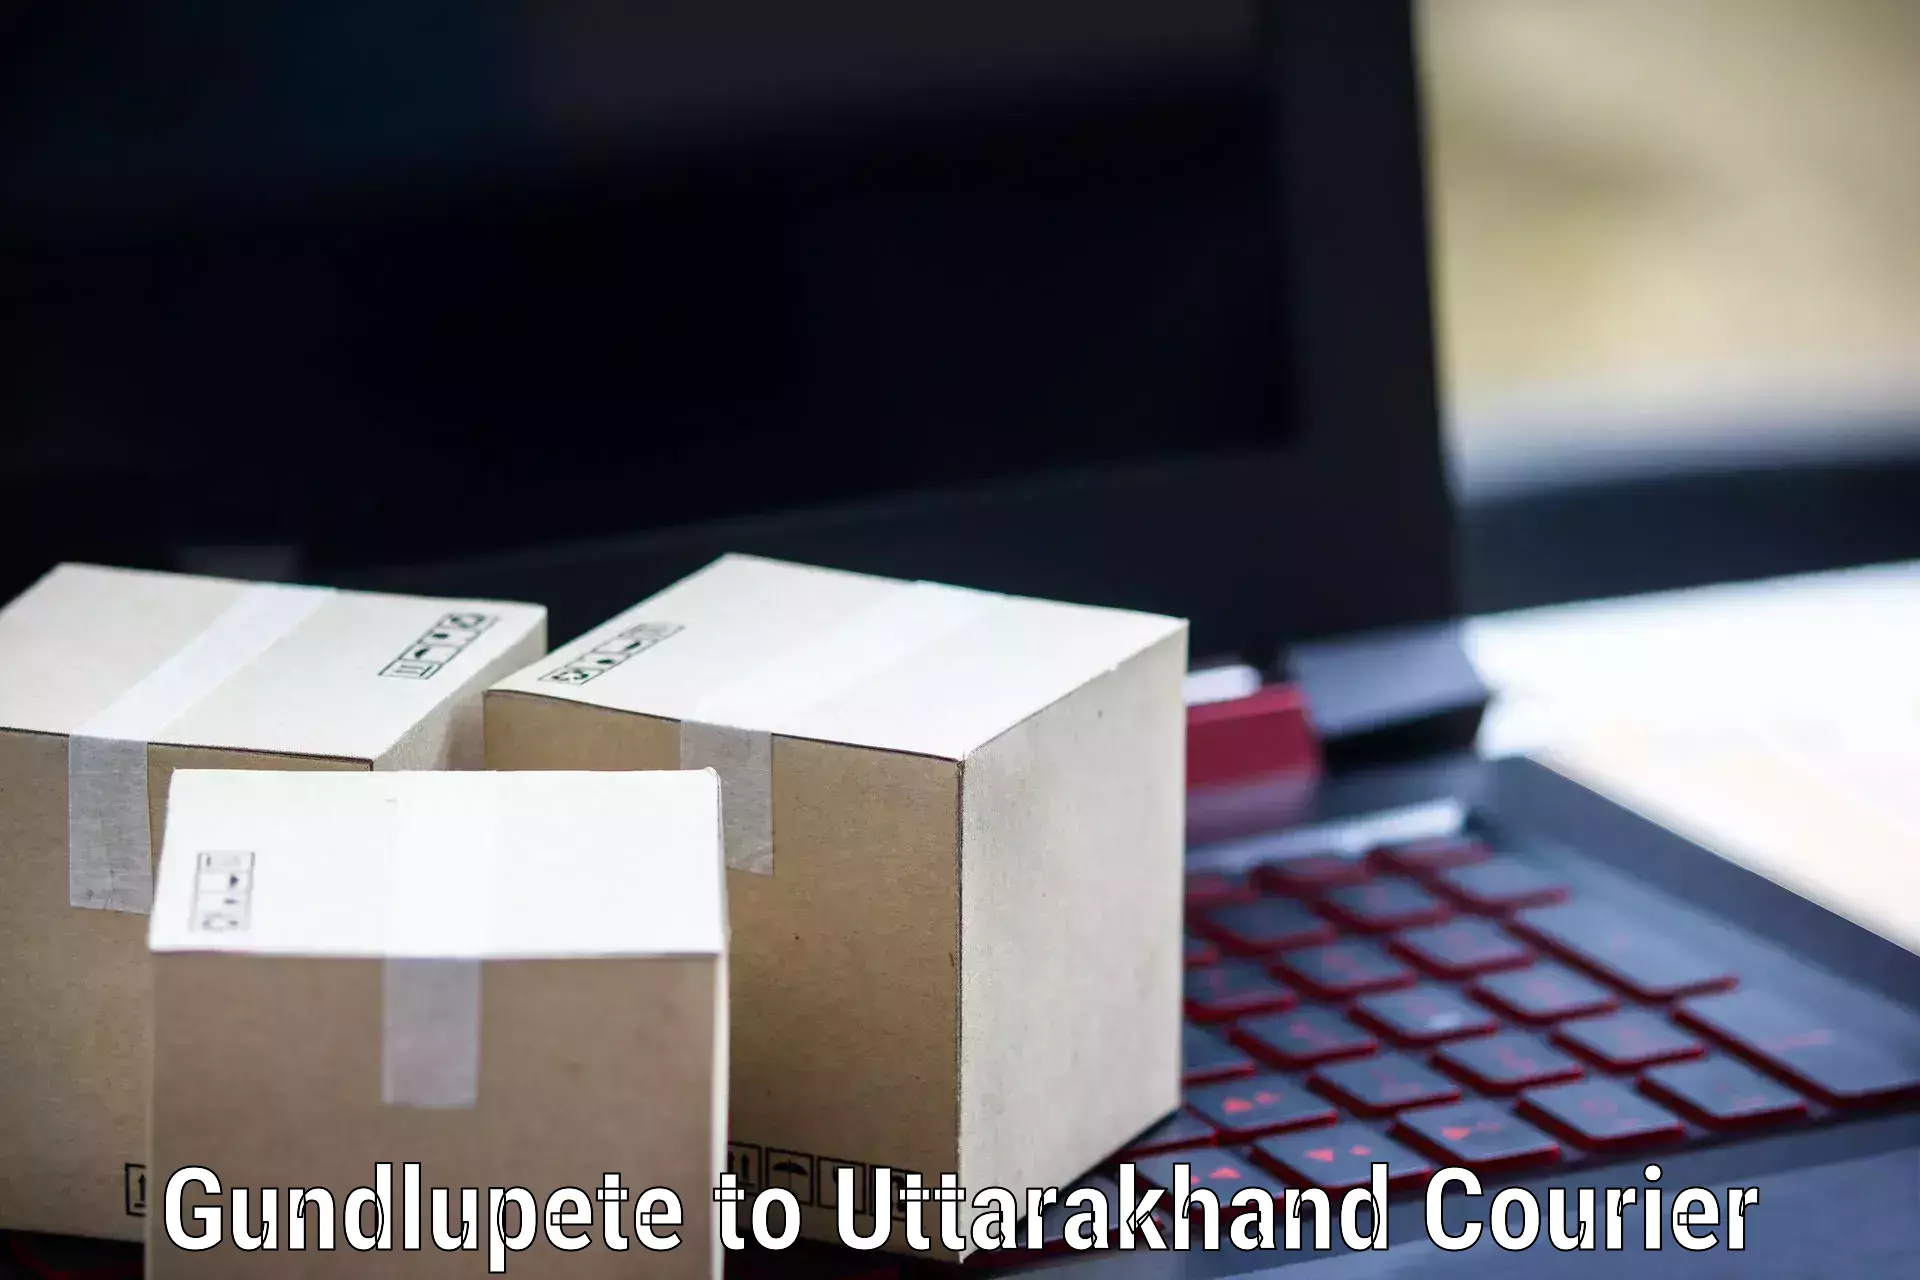 Next-generation courier services Gundlupete to Srinagar Pauri Garhwal